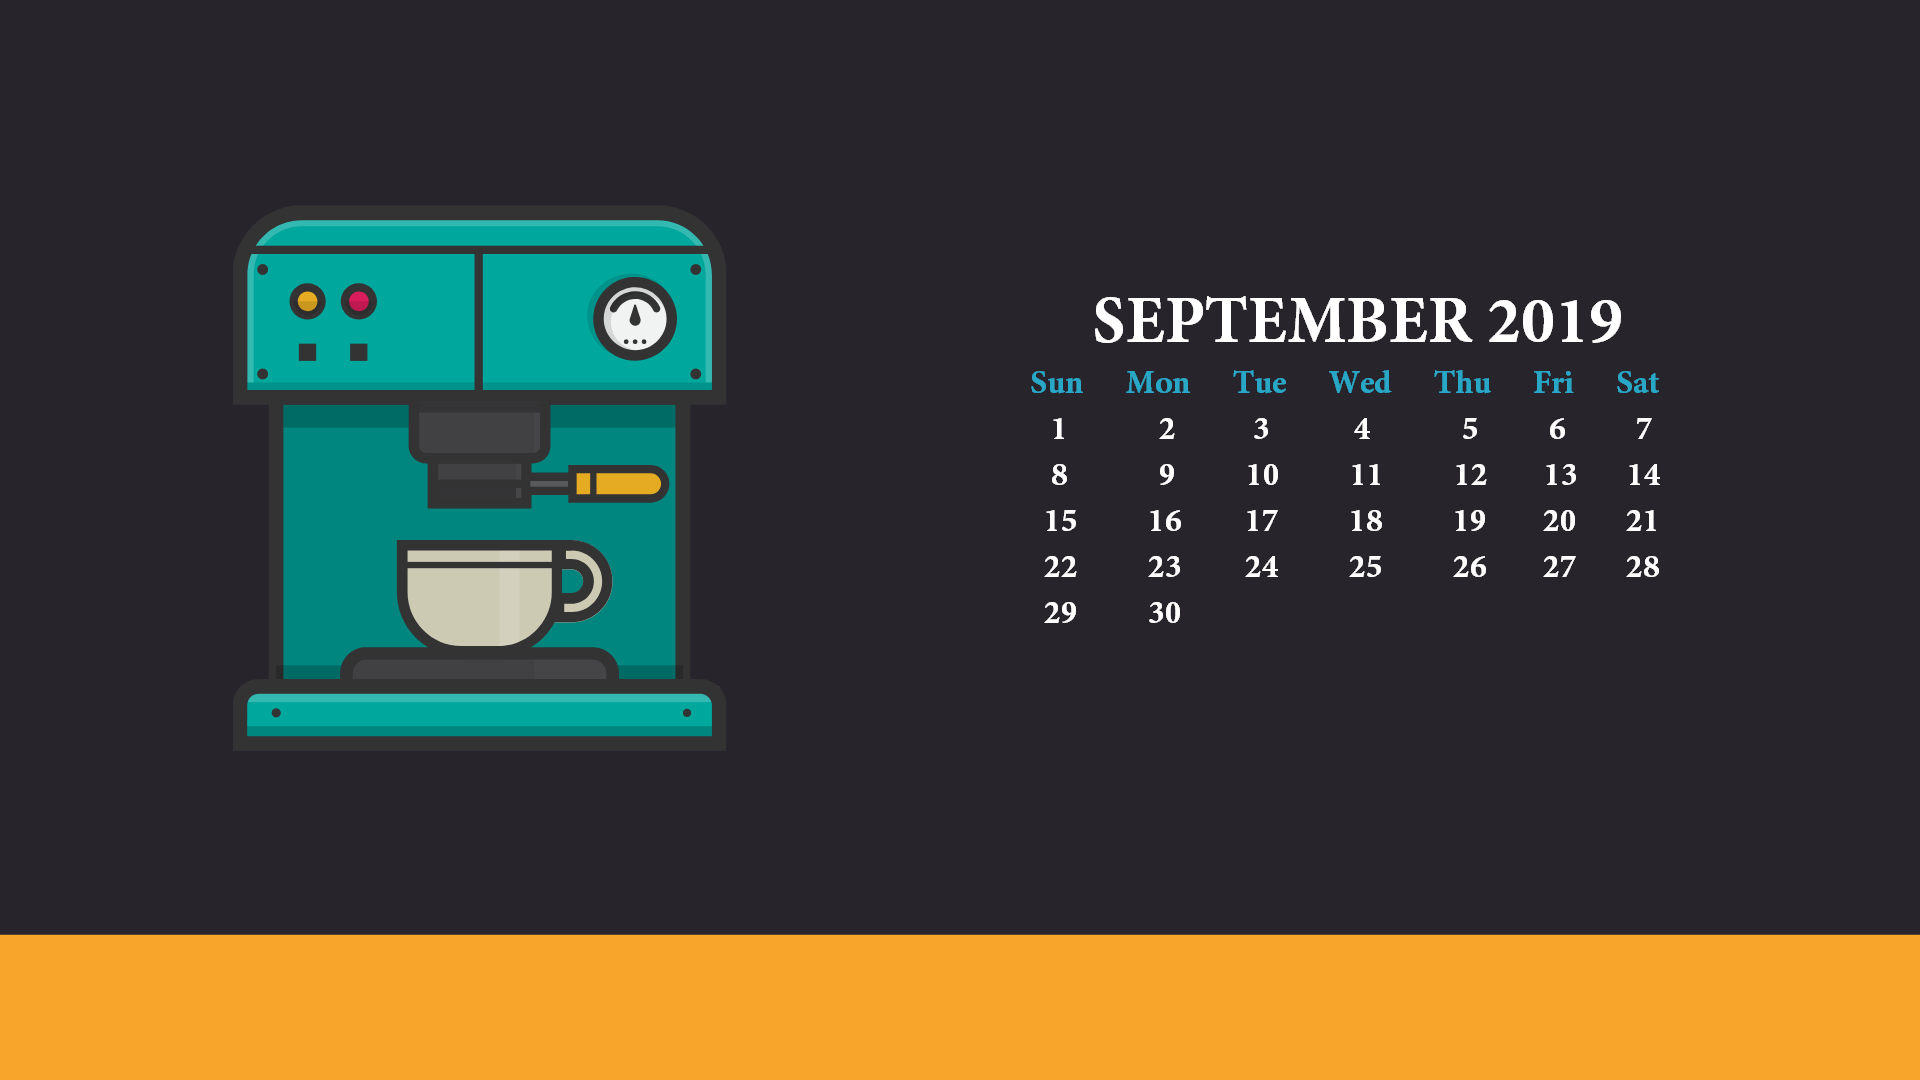 September 2019 Desktop Wallpaper With Calendar - Calendar Wallpaper September 2019 - HD Wallpaper 